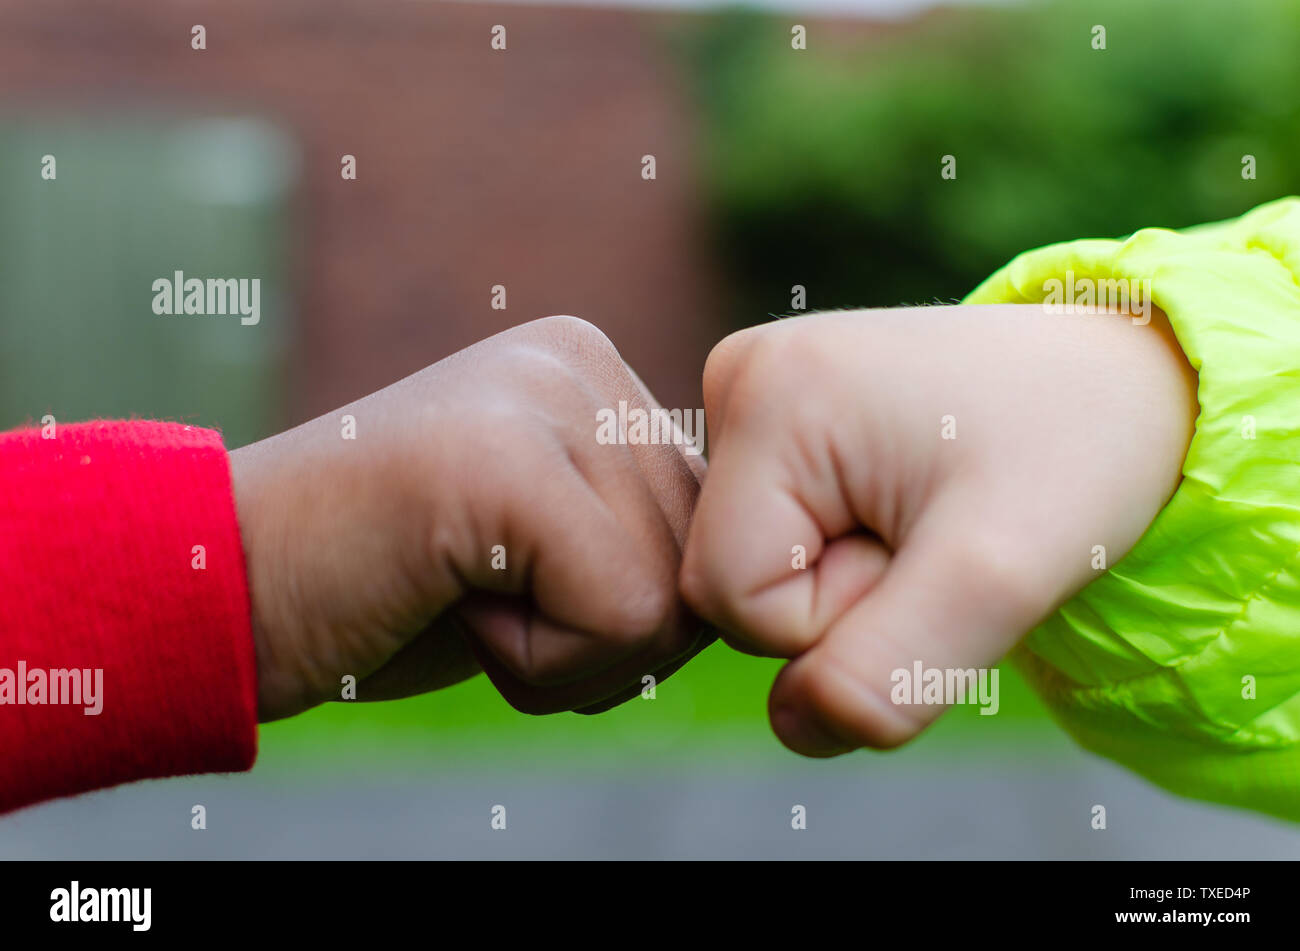 Due bambini di diverse razze e colore della pelle si salutano con pugno bump. Mostra fotografica di amicizia, supporto, uguaglianza e diversità. Foto Stock